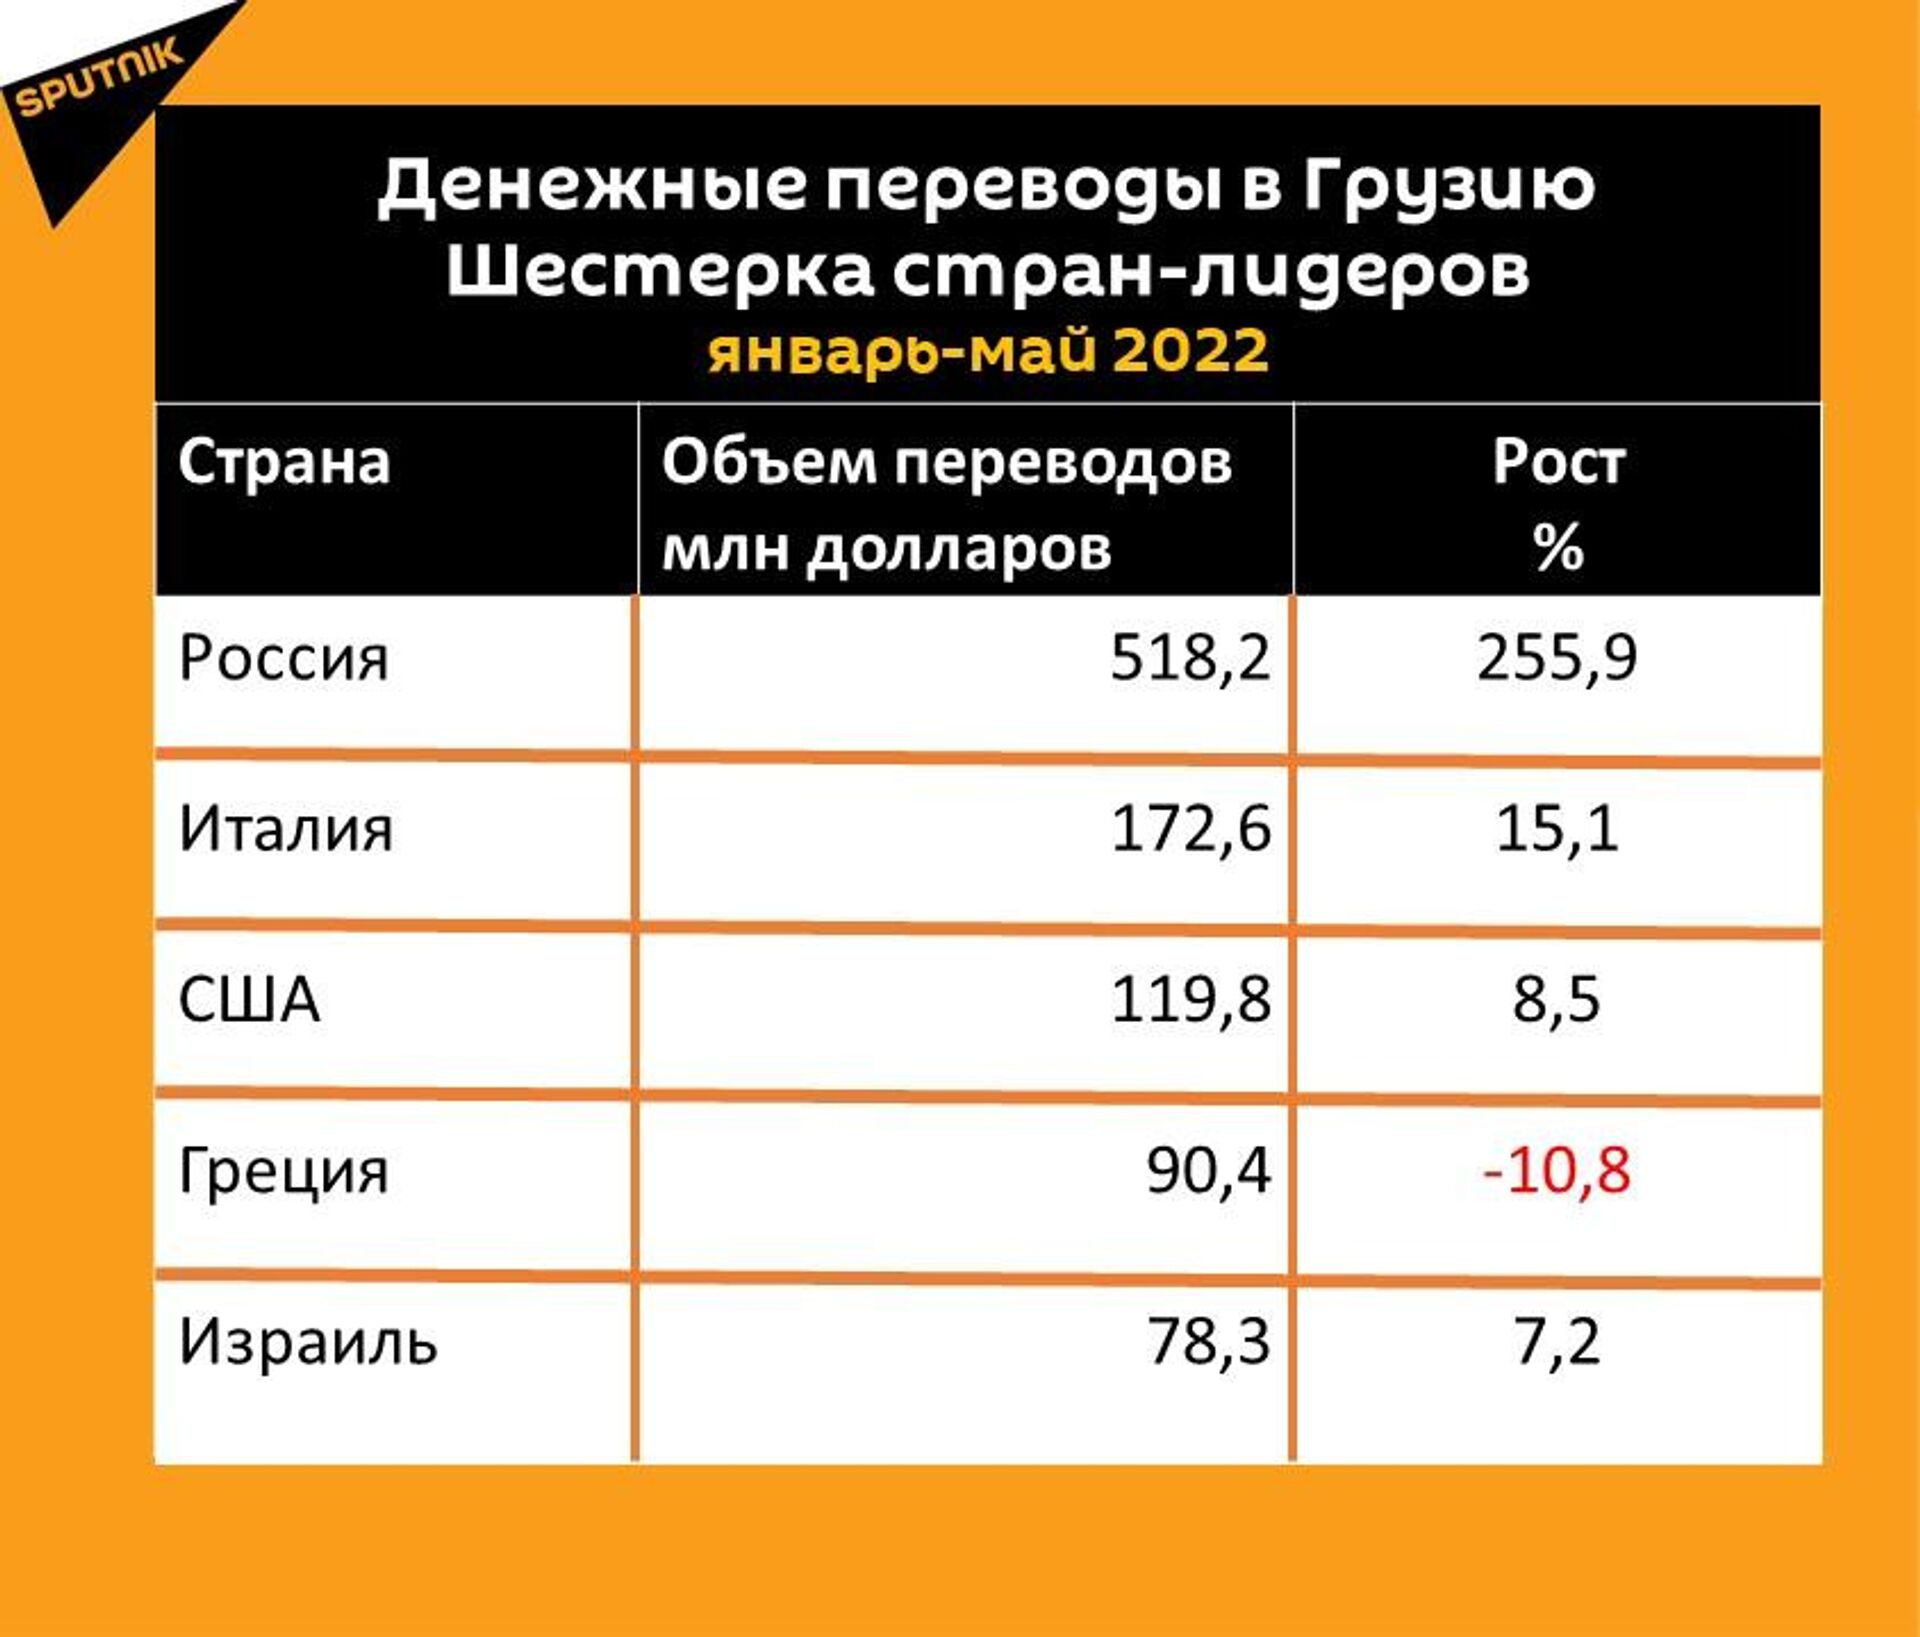 Статистика денежных переводов в Грузию за январь-май 2022 года - Sputnik Грузия, 1920, 16.06.2022